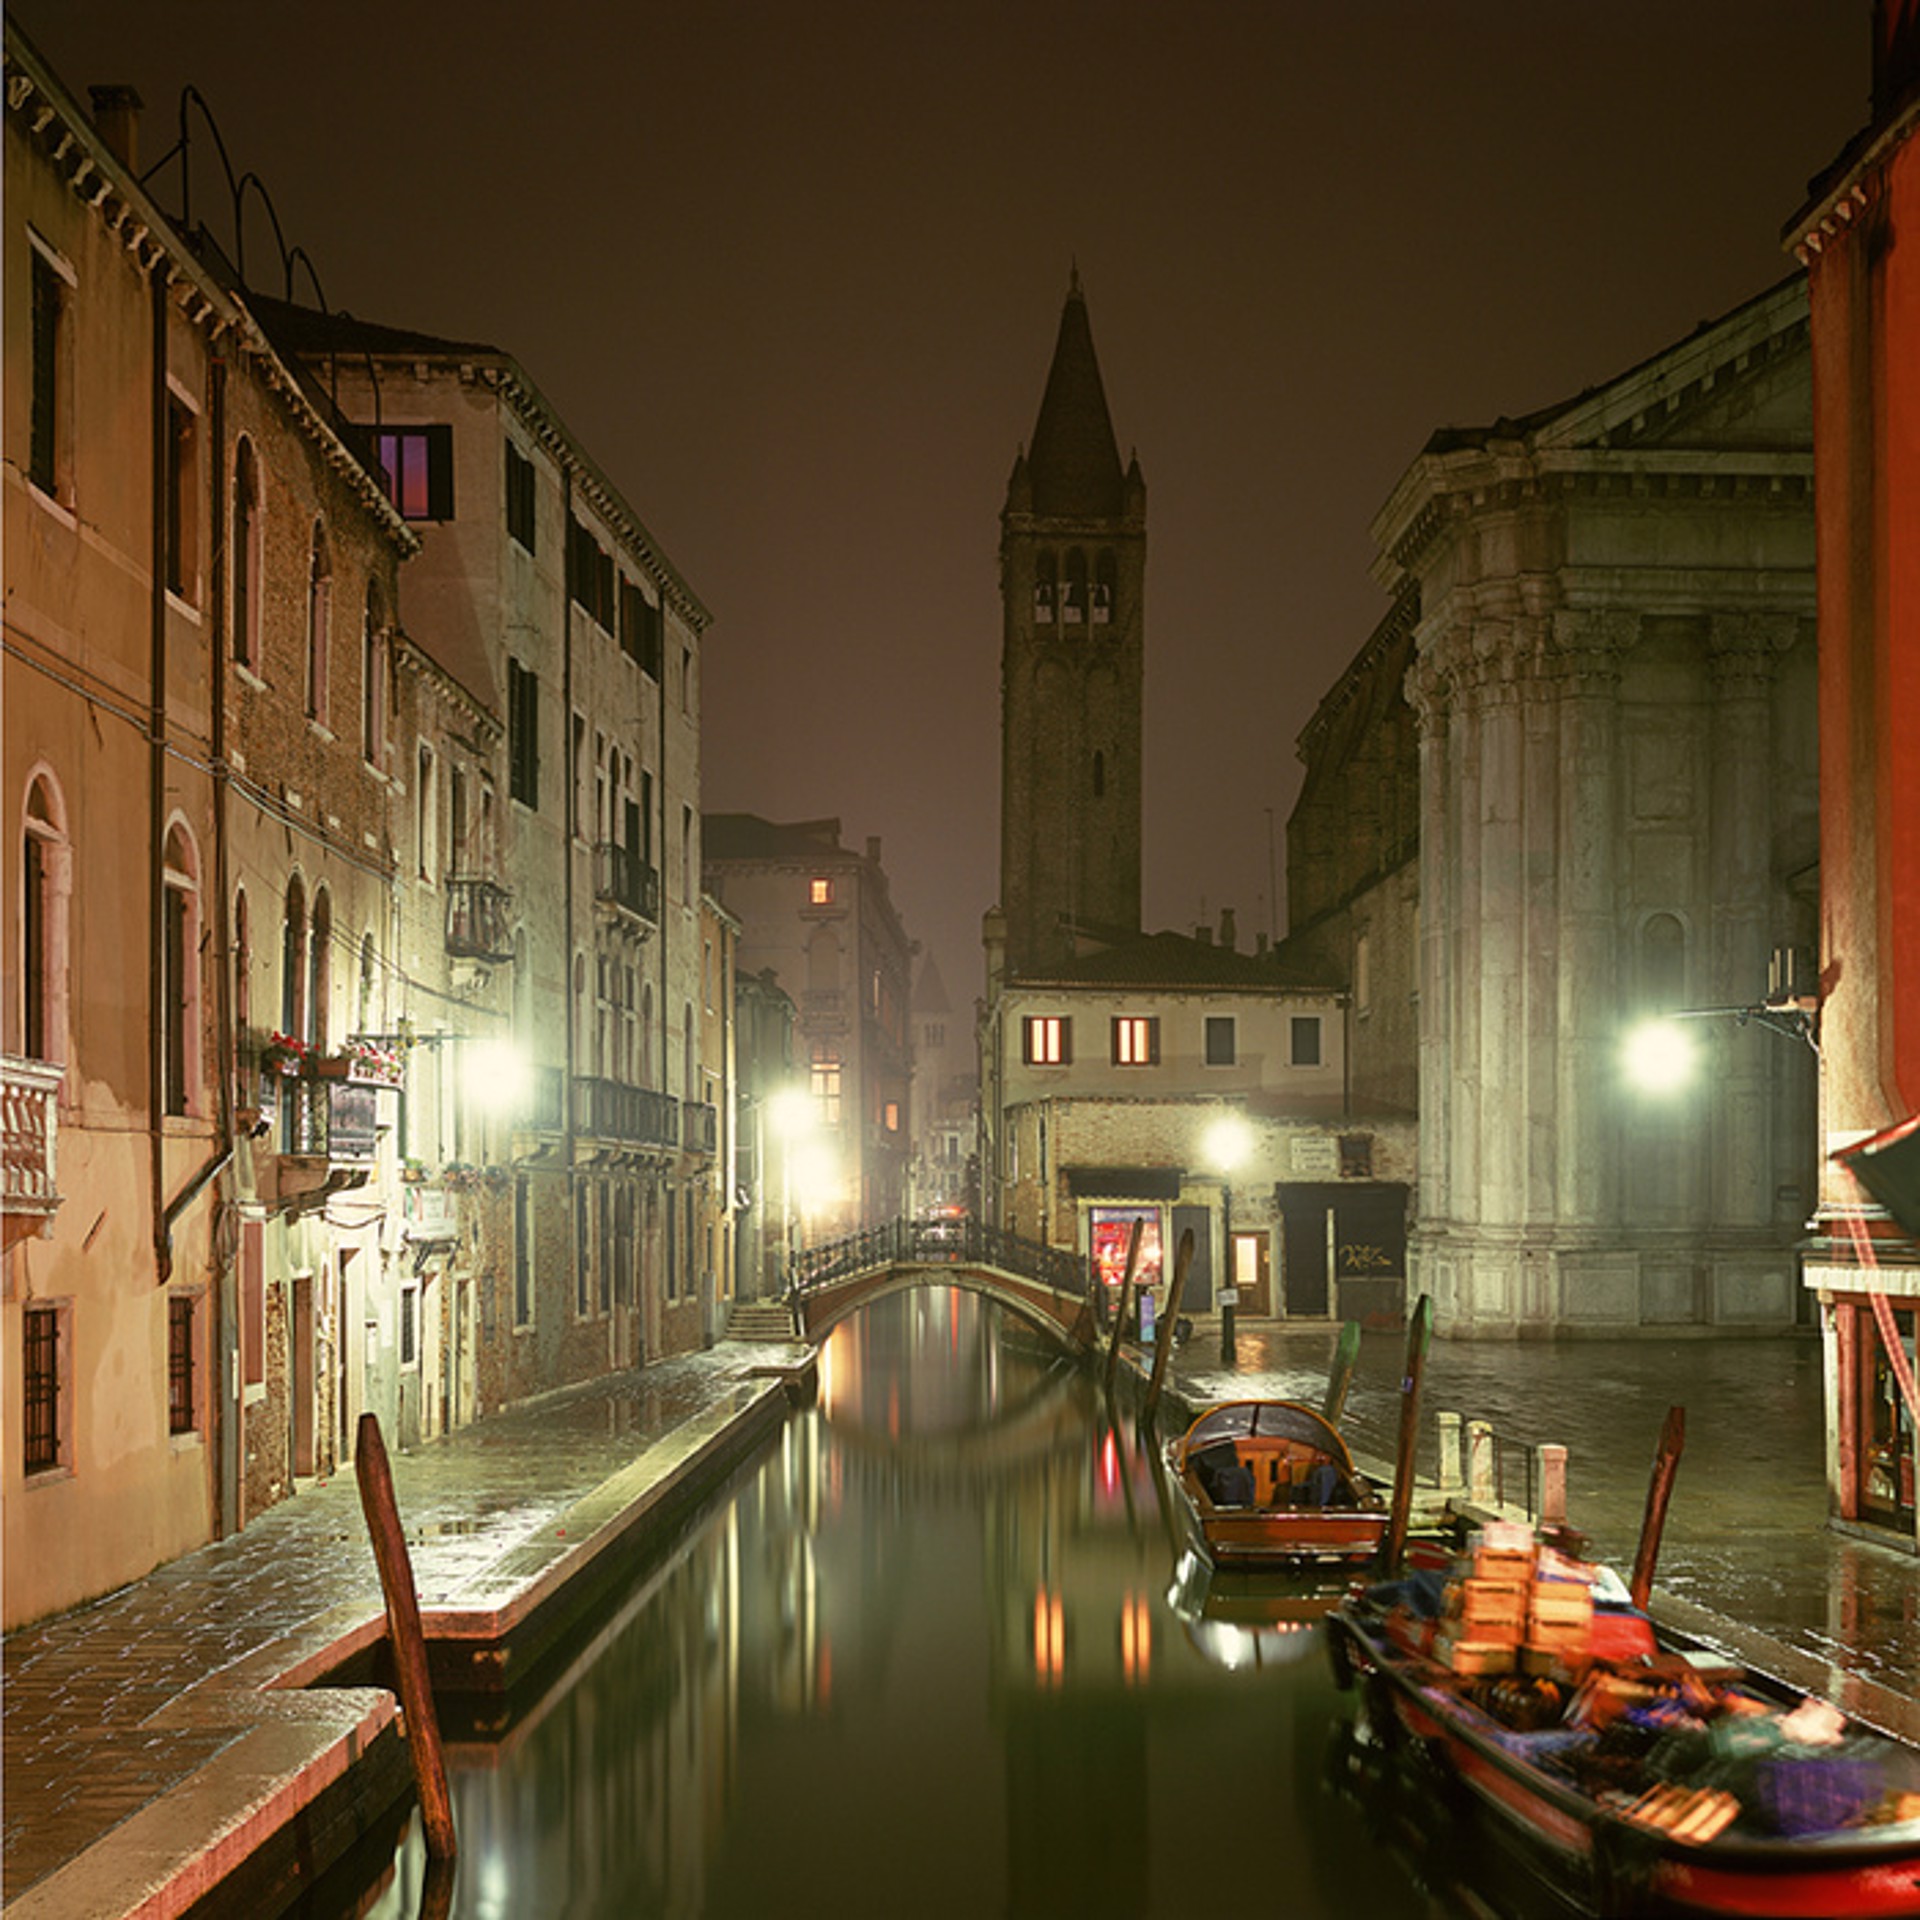 Campo S Barnaba, Venice, Italy by David Burdeny